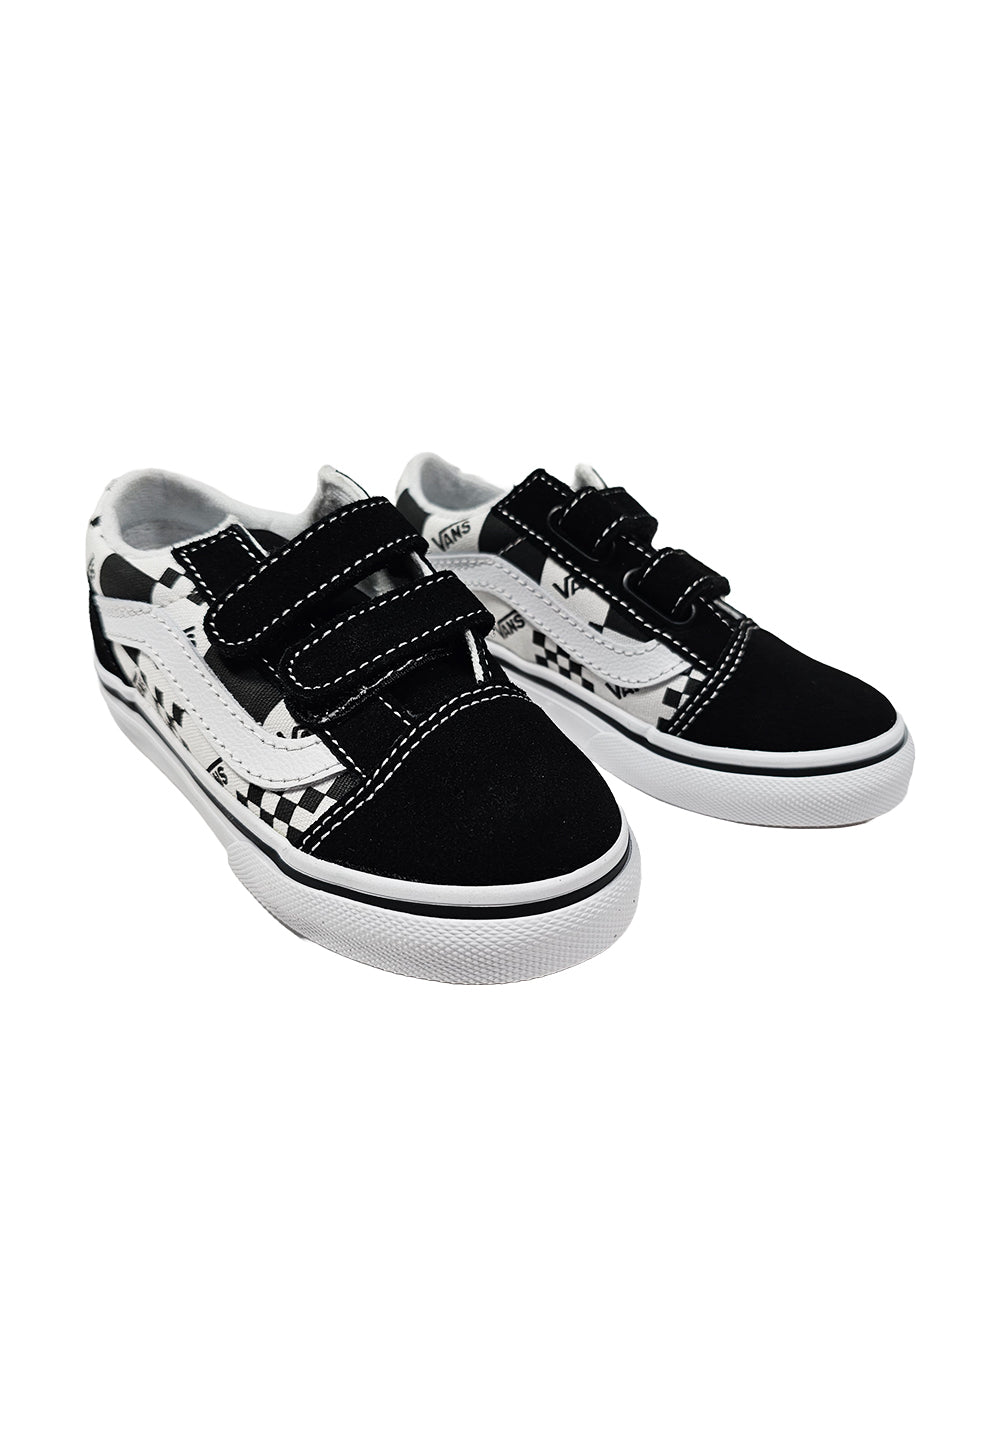 Black-white shoes for children